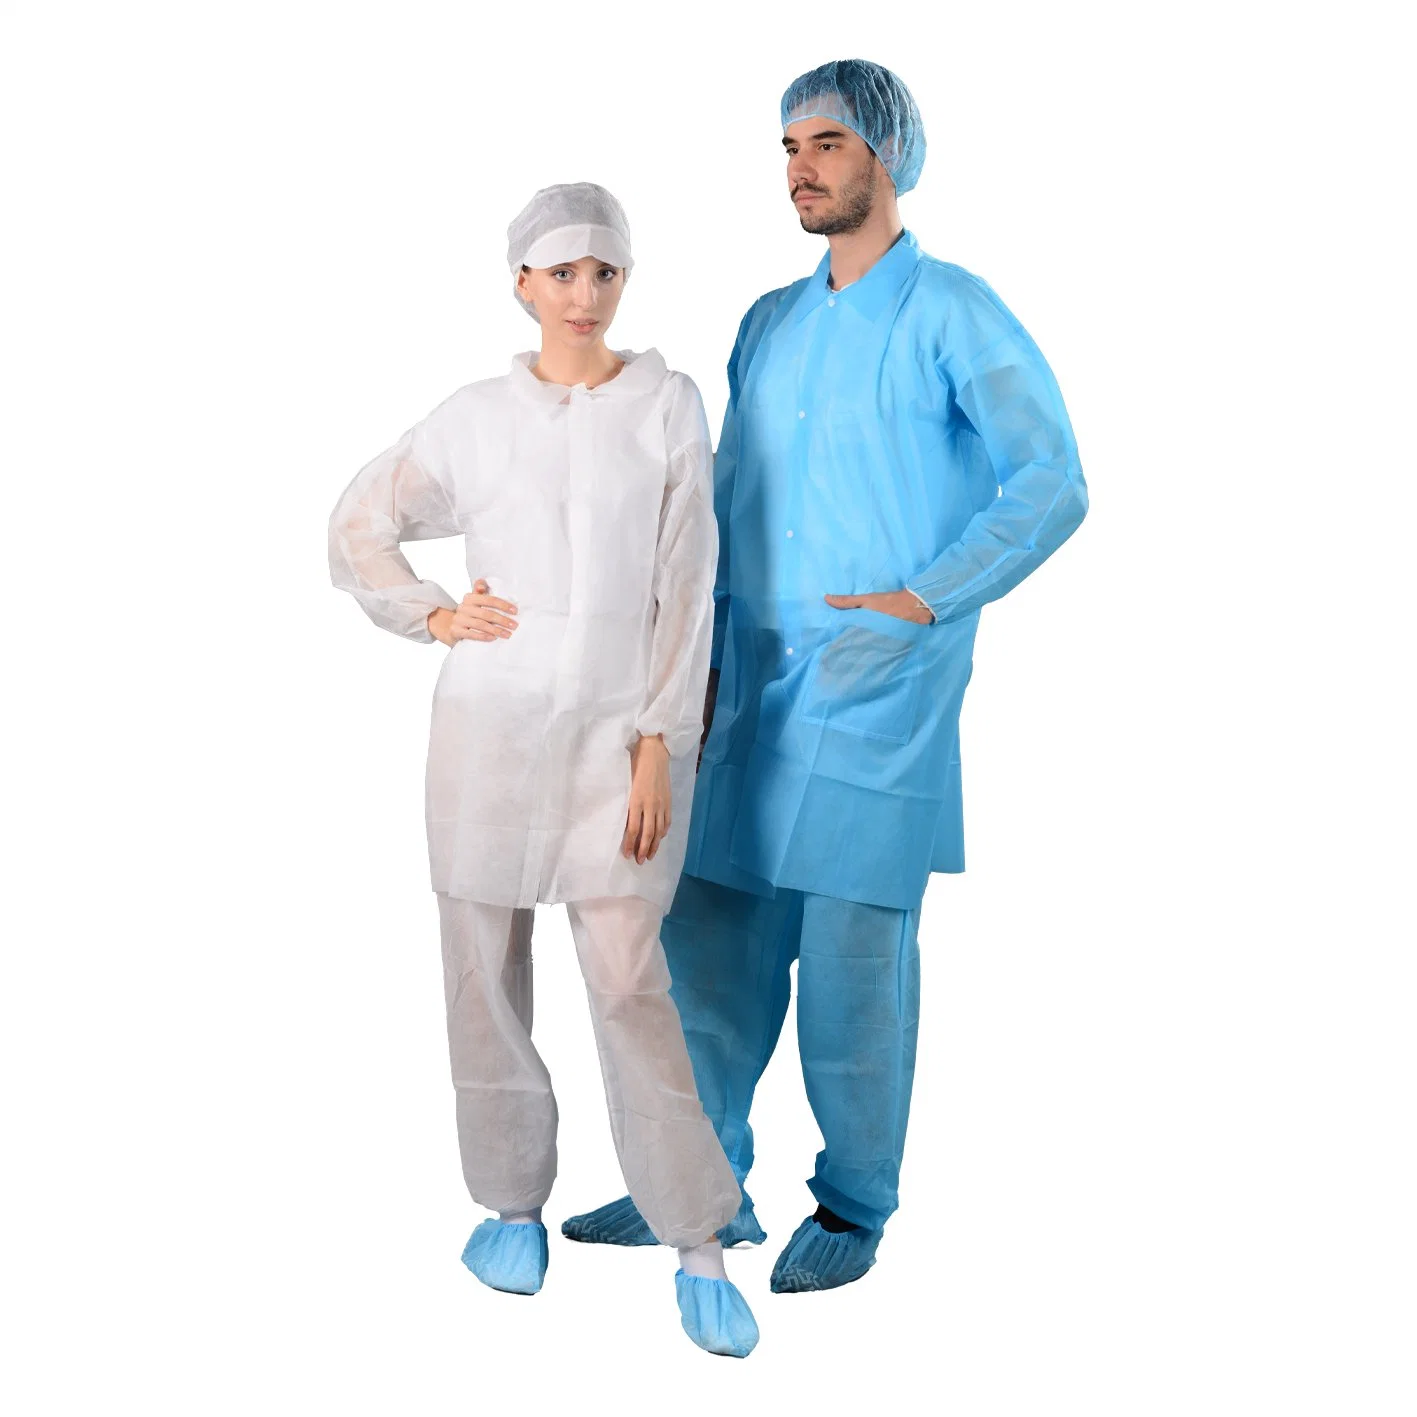 Blouse chirurgicale jetable en PP de 25 g/m², blanche et bleue, pour l'isolement médical, ainsi que des tenues de chirurgien et de laboratoire pour médecins et infirmières.